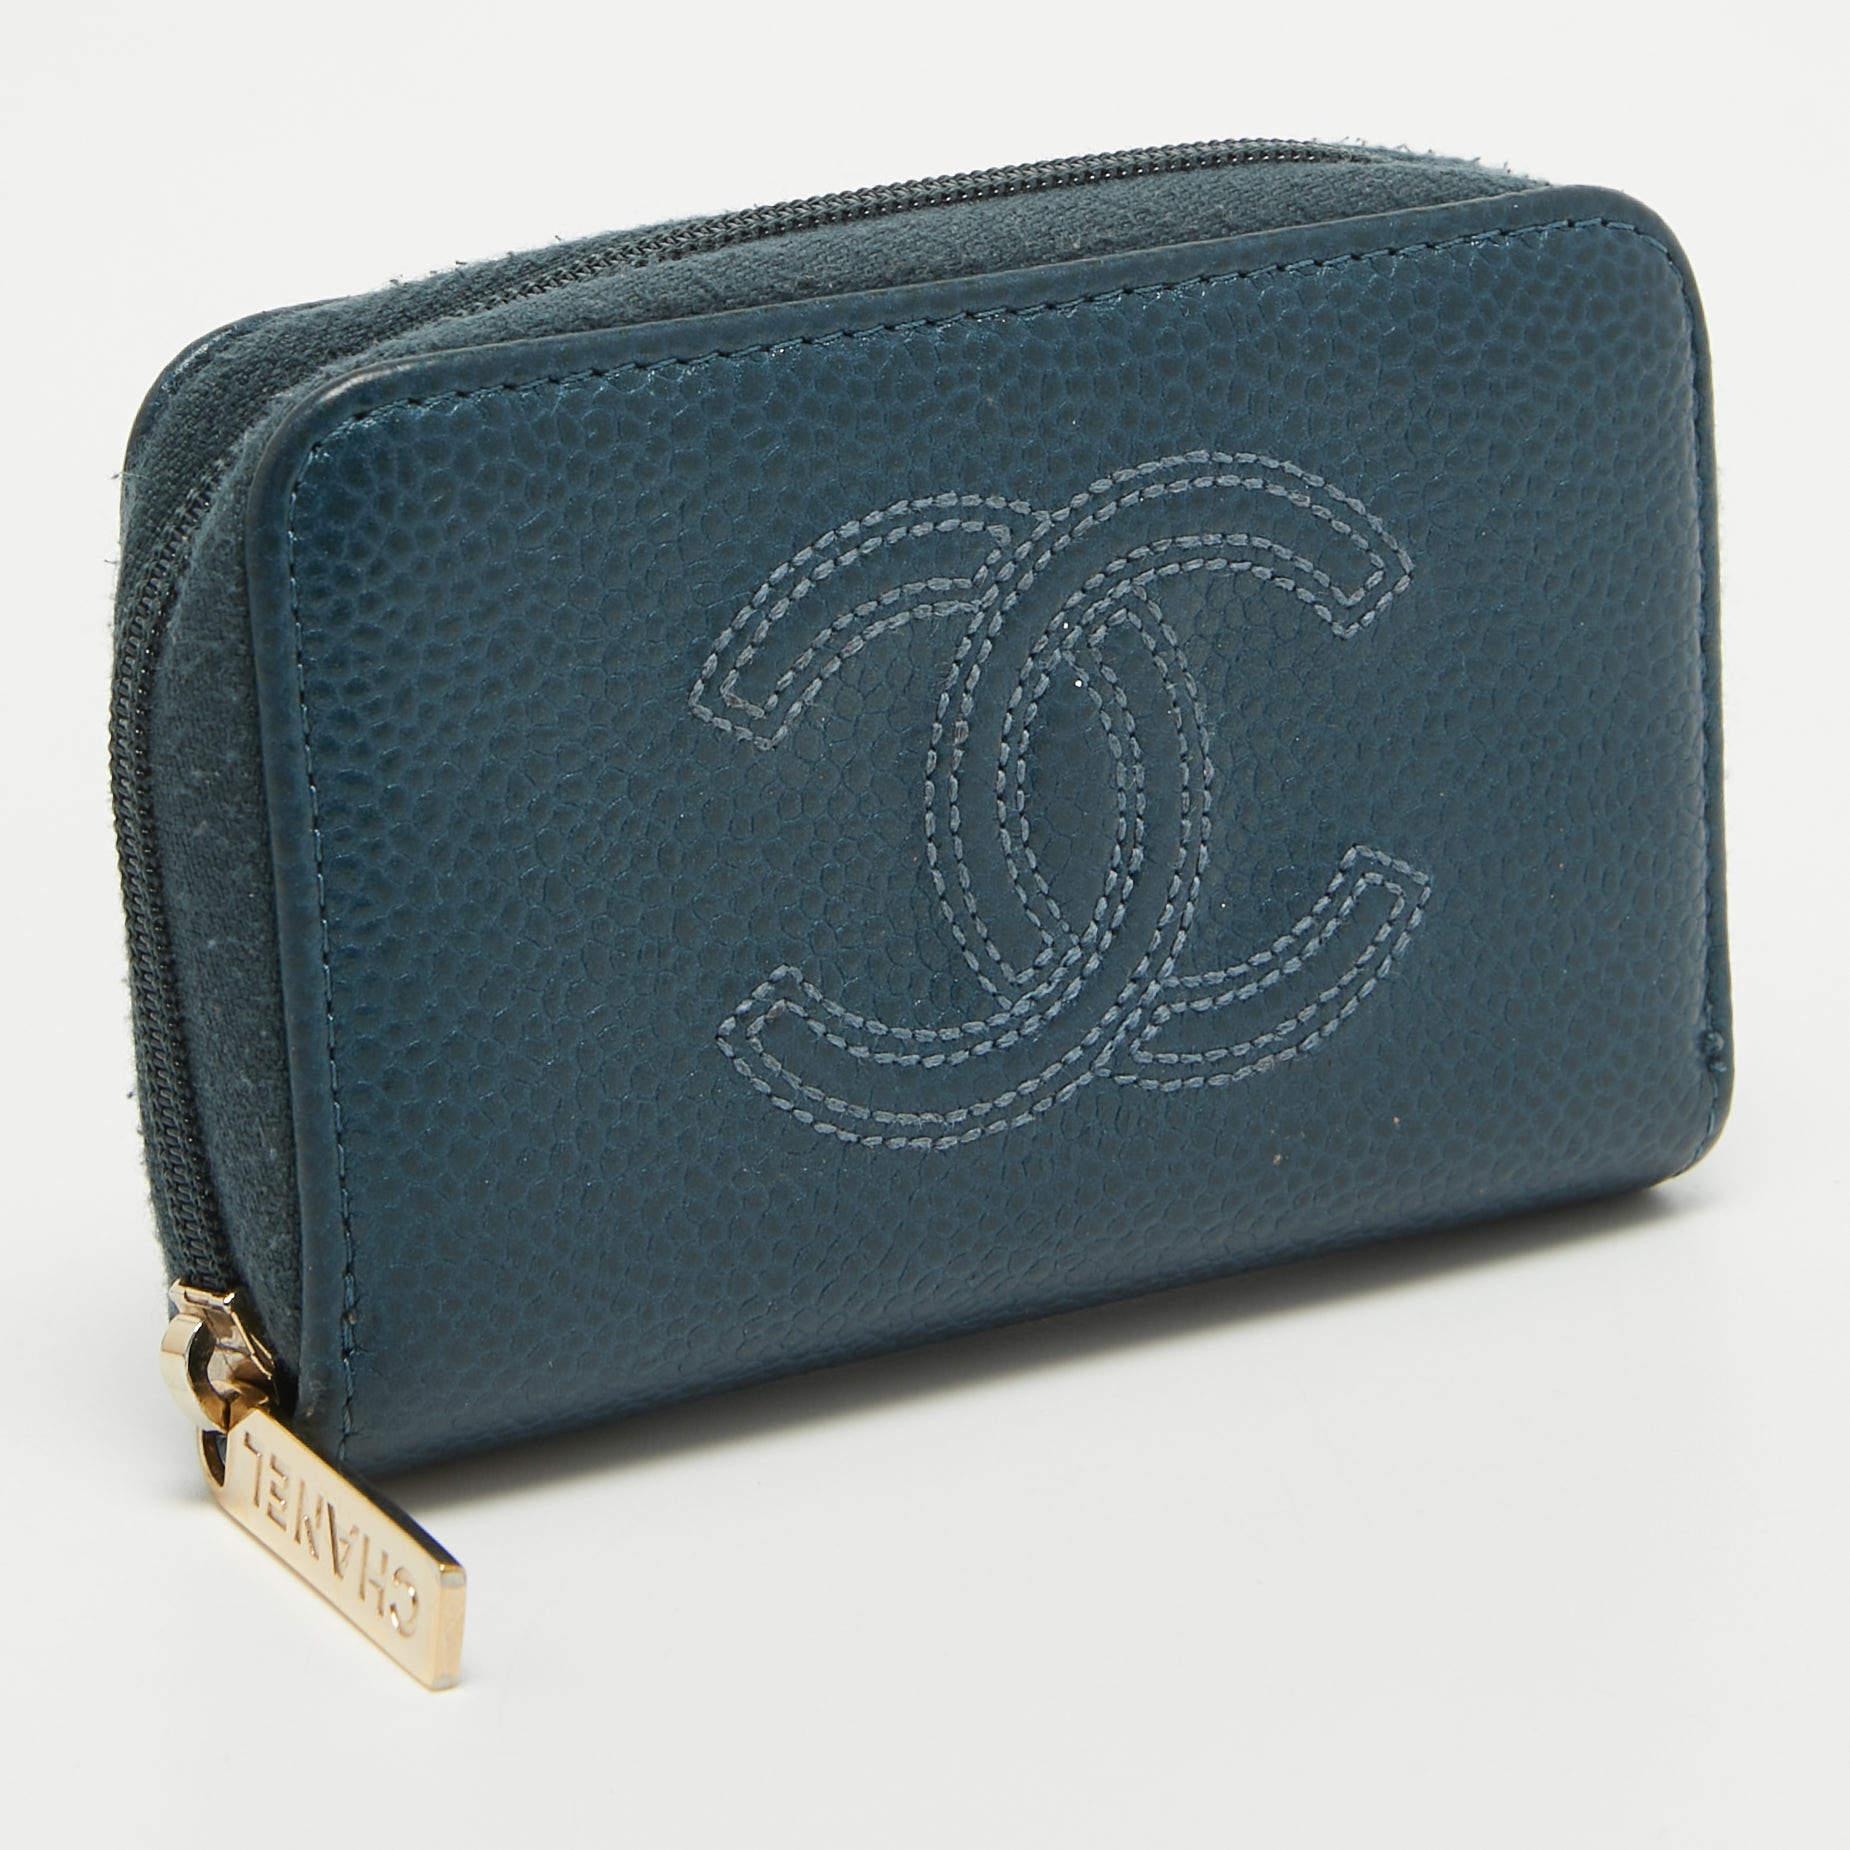 Das aus Kaviarleder gefertigte Chanel Portemonnaie ist ein idealer Begleiter für Münzen und andere Kleinigkeiten. Sie hat einen schönen dunkelblauen Farbton und ist mit Stoff gefüttert.

Enthält
Original-Staubbeutel, Echtheitskarte